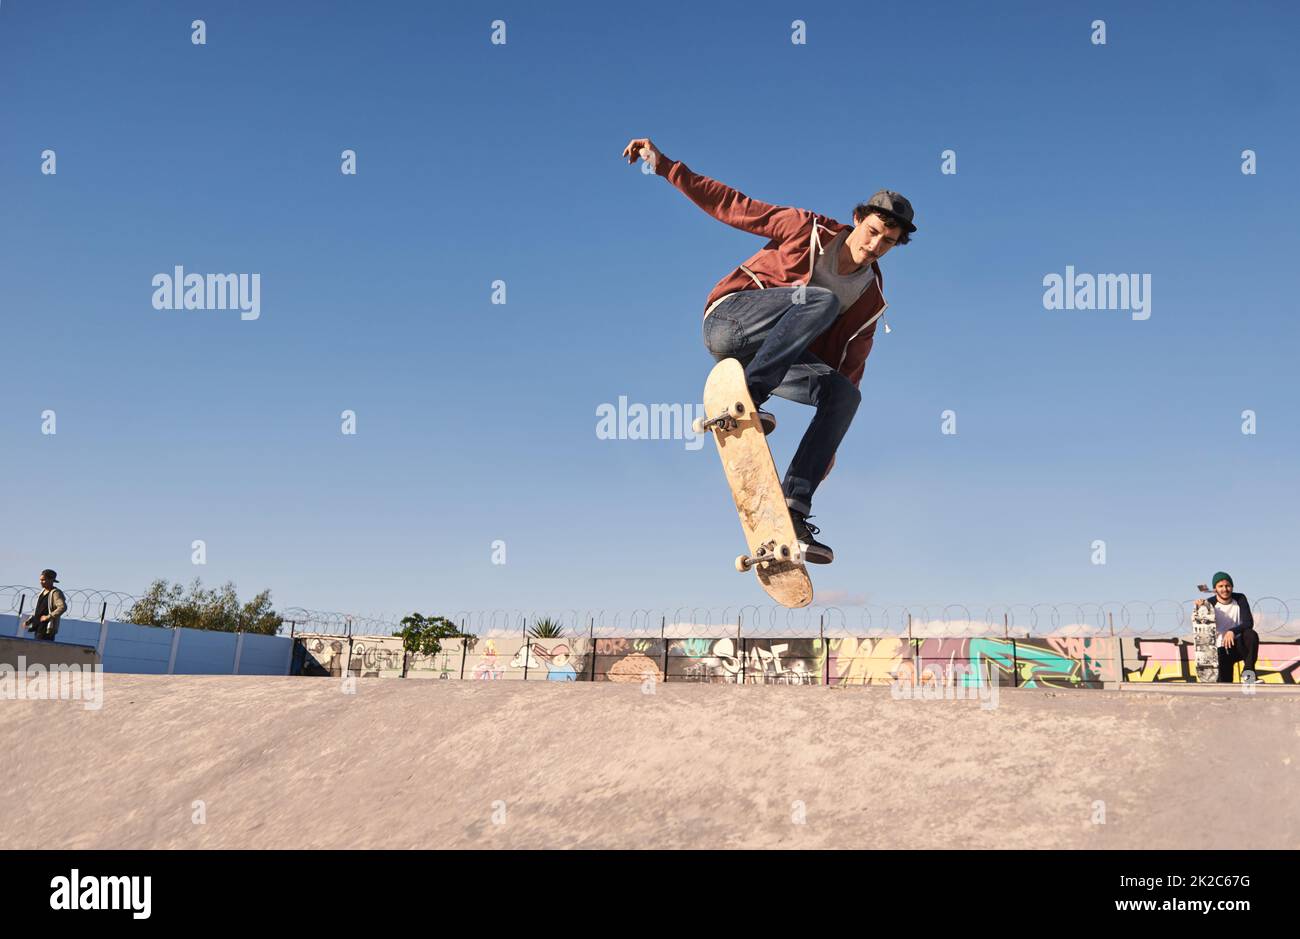 Trucos de skate fotografías e imágenes de alta resolución - Página 5 - Alamy